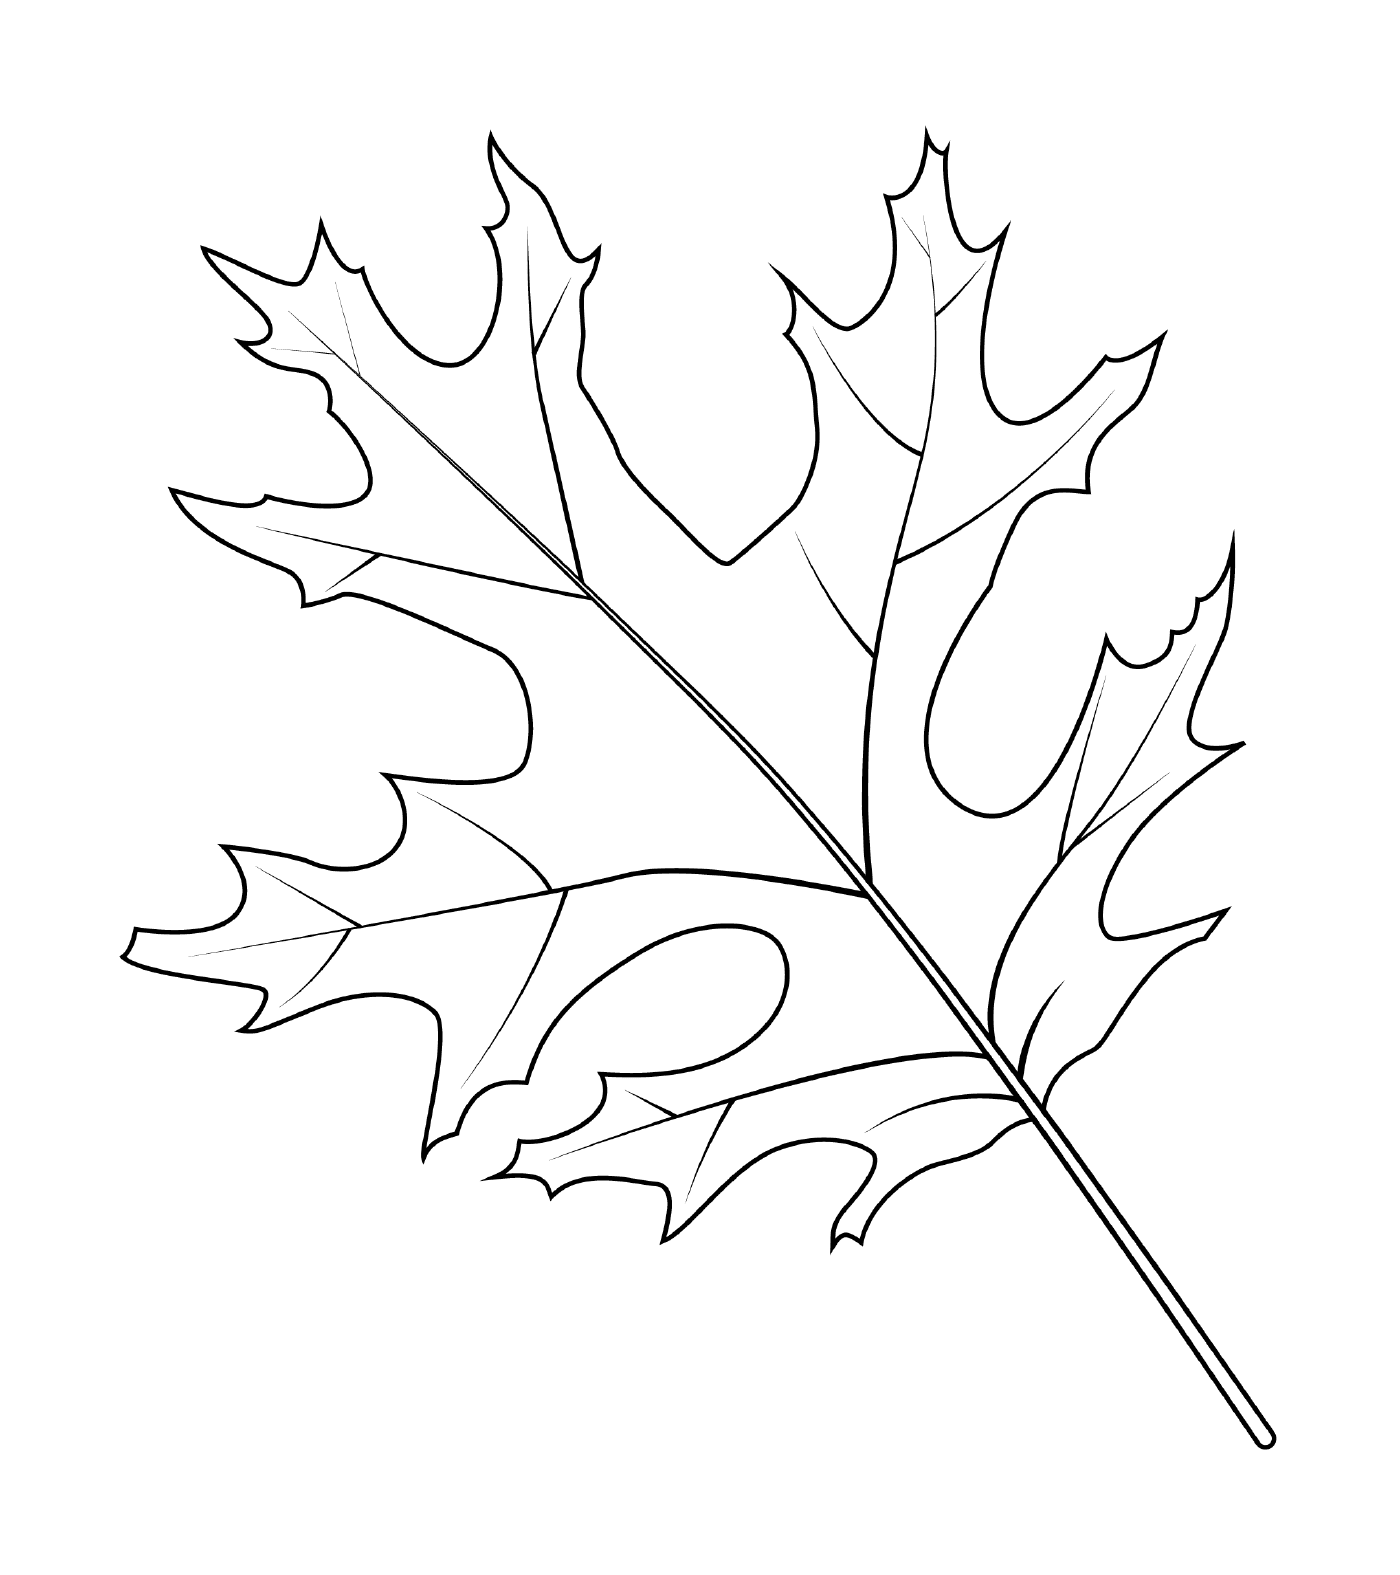  Scarlet oak leaf 